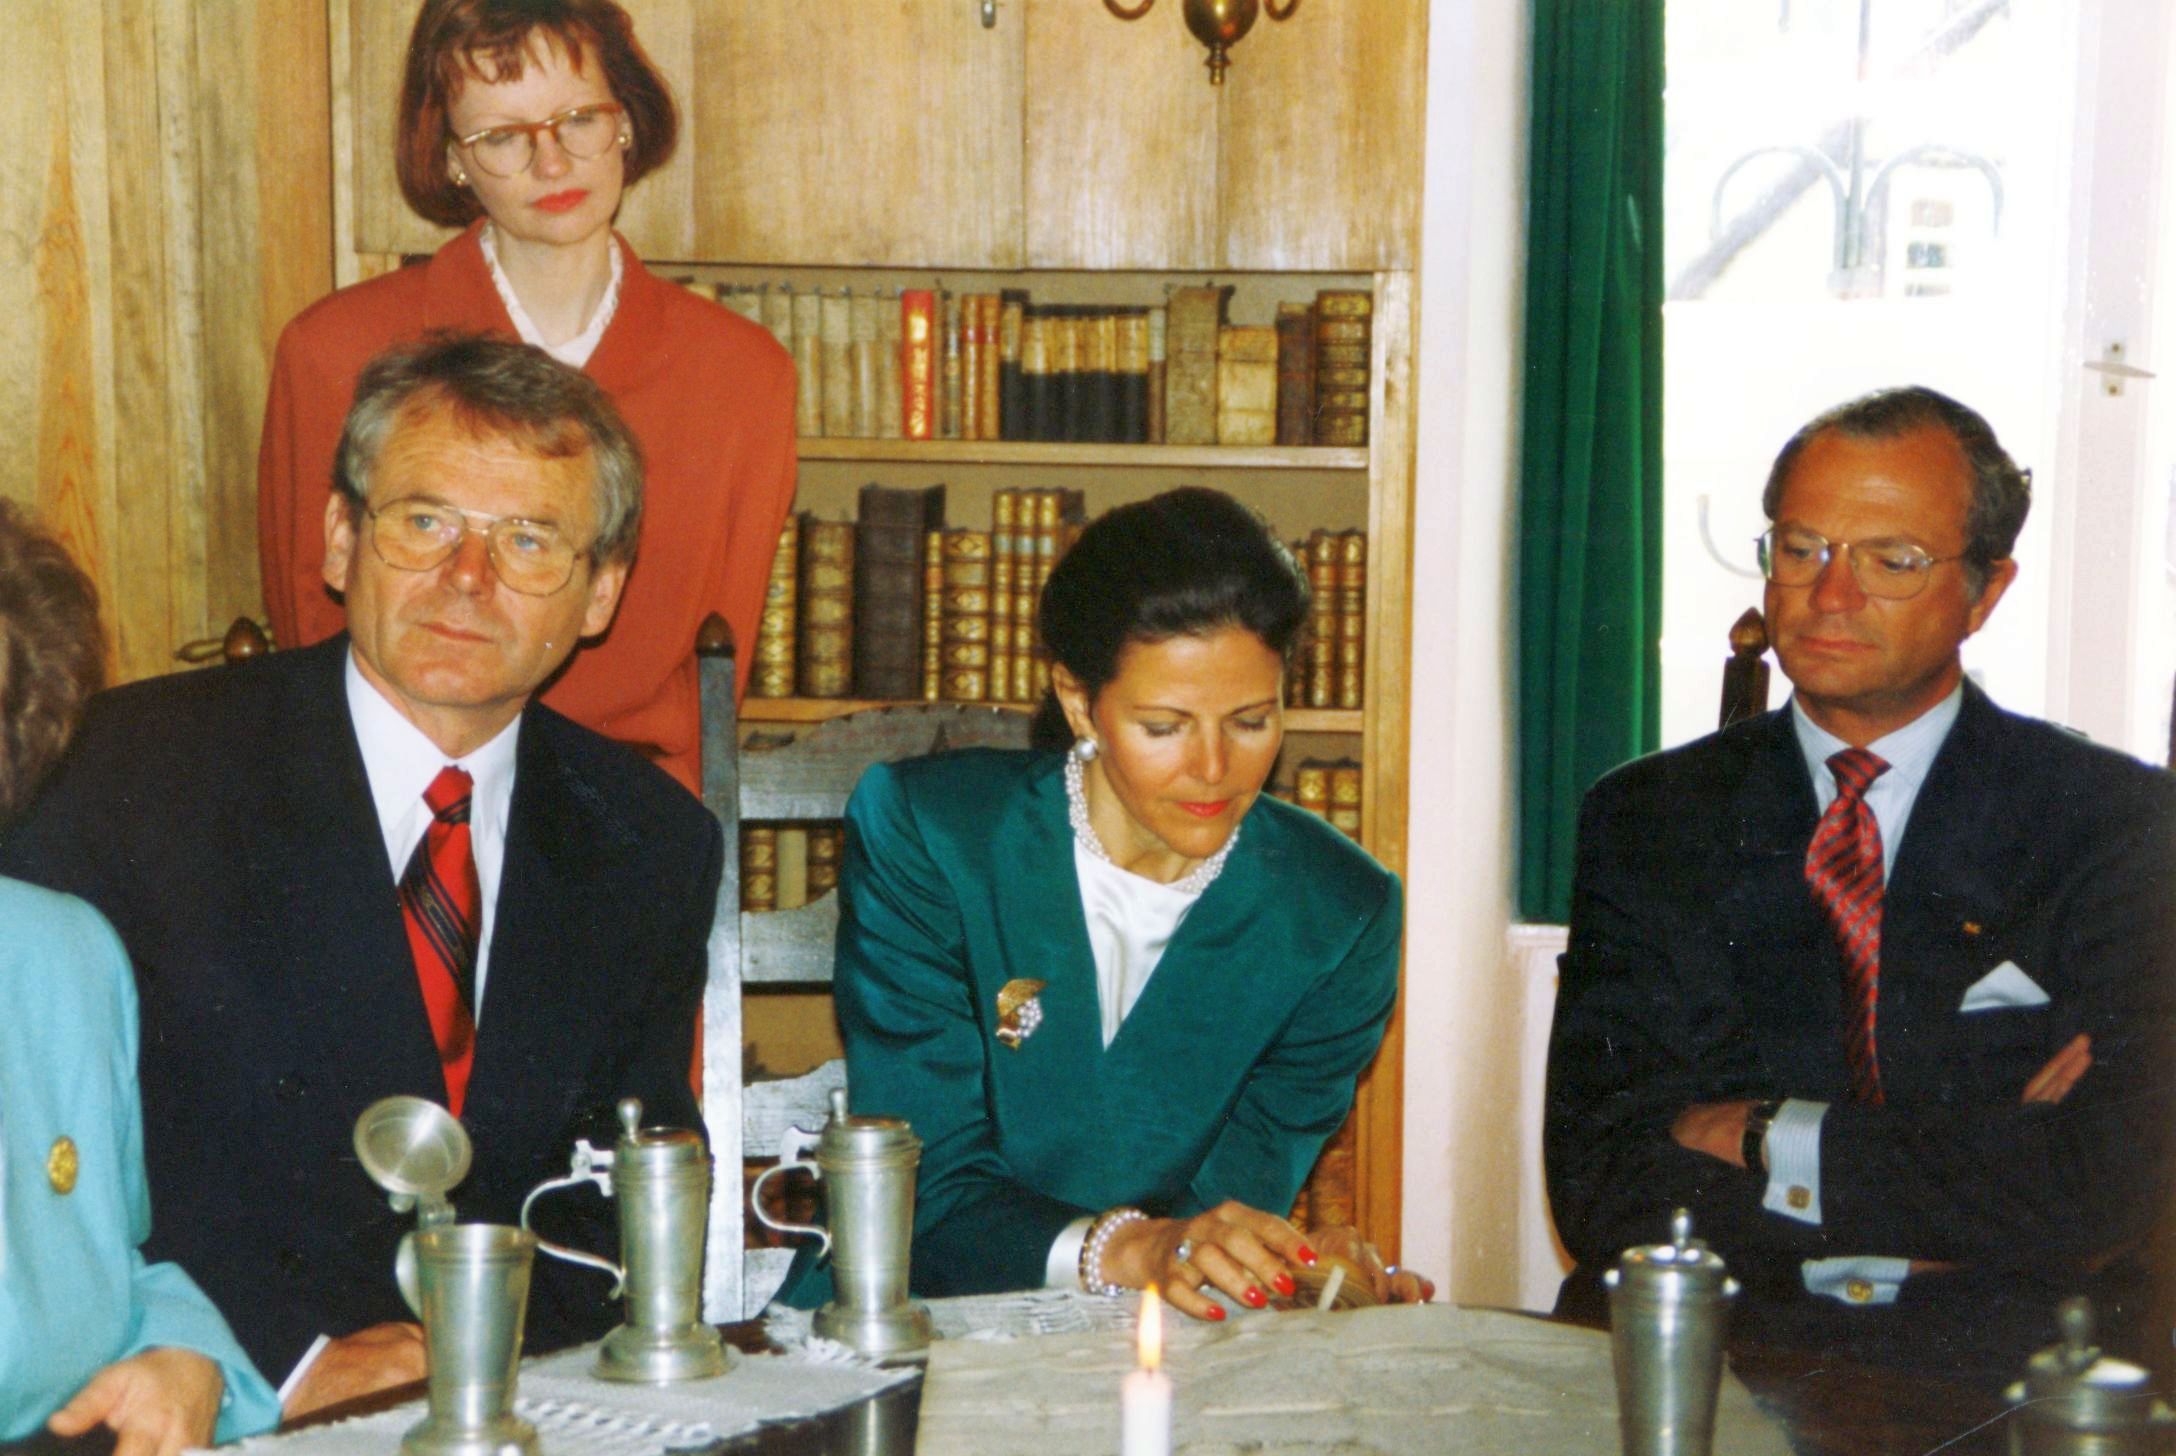 Staatsbesuch-schwedische-Koenigsfamilie-1993.jpg